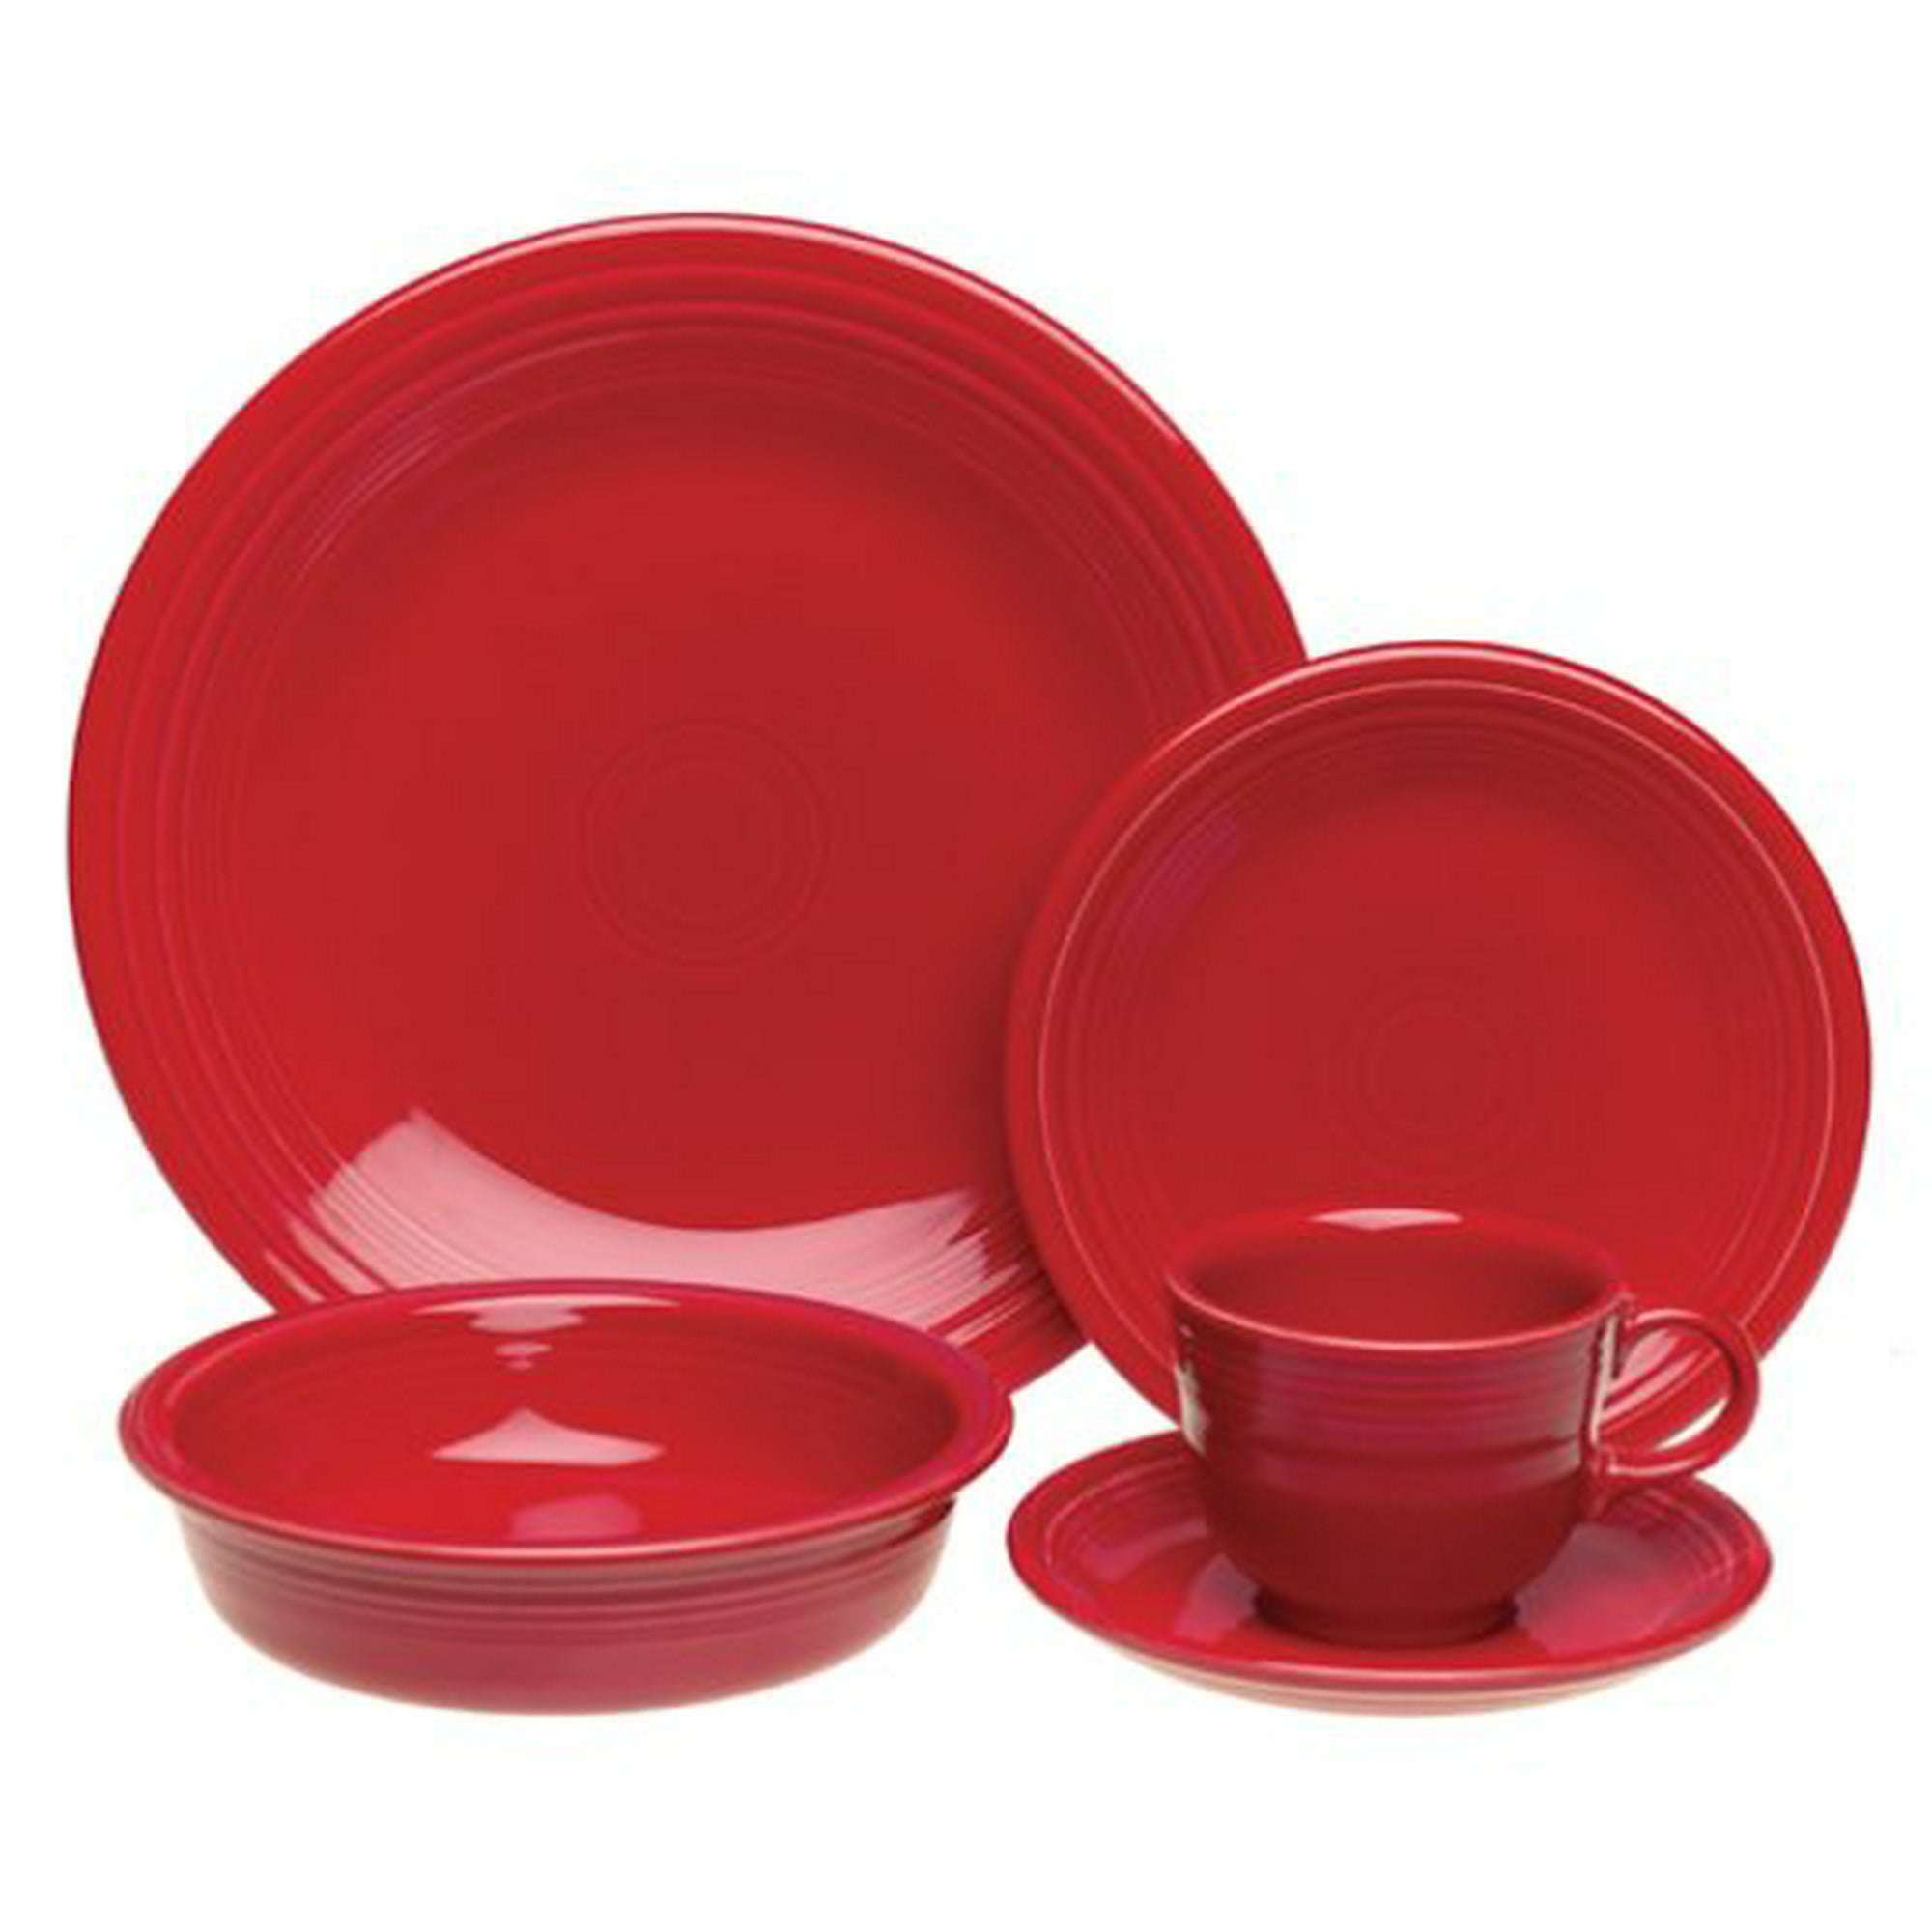 Купить красную посуду. Красная посуда. Посуда красного цвета. Набор посуды красный. Керамическая посуда однотонная.